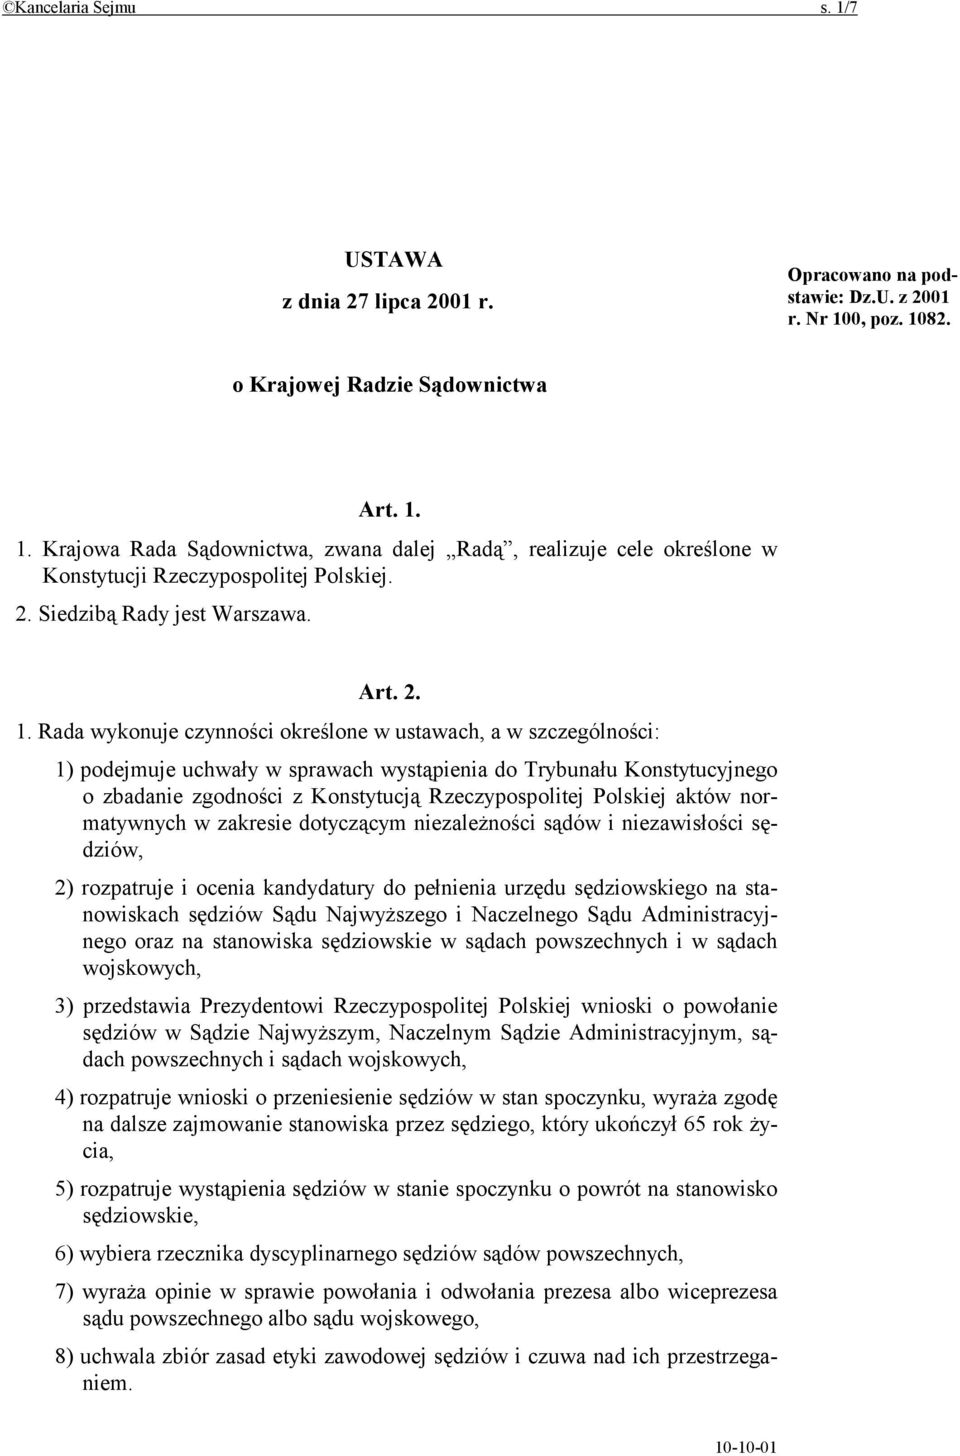 Rada wykonuje czynności określone w ustawach, a w szczególności: 1) podejmuje uchwały w sprawach wystąpienia do Trybunału Konstytucyjnego o zbadanie zgodności z Konstytucją Rzeczypospolitej Polskiej